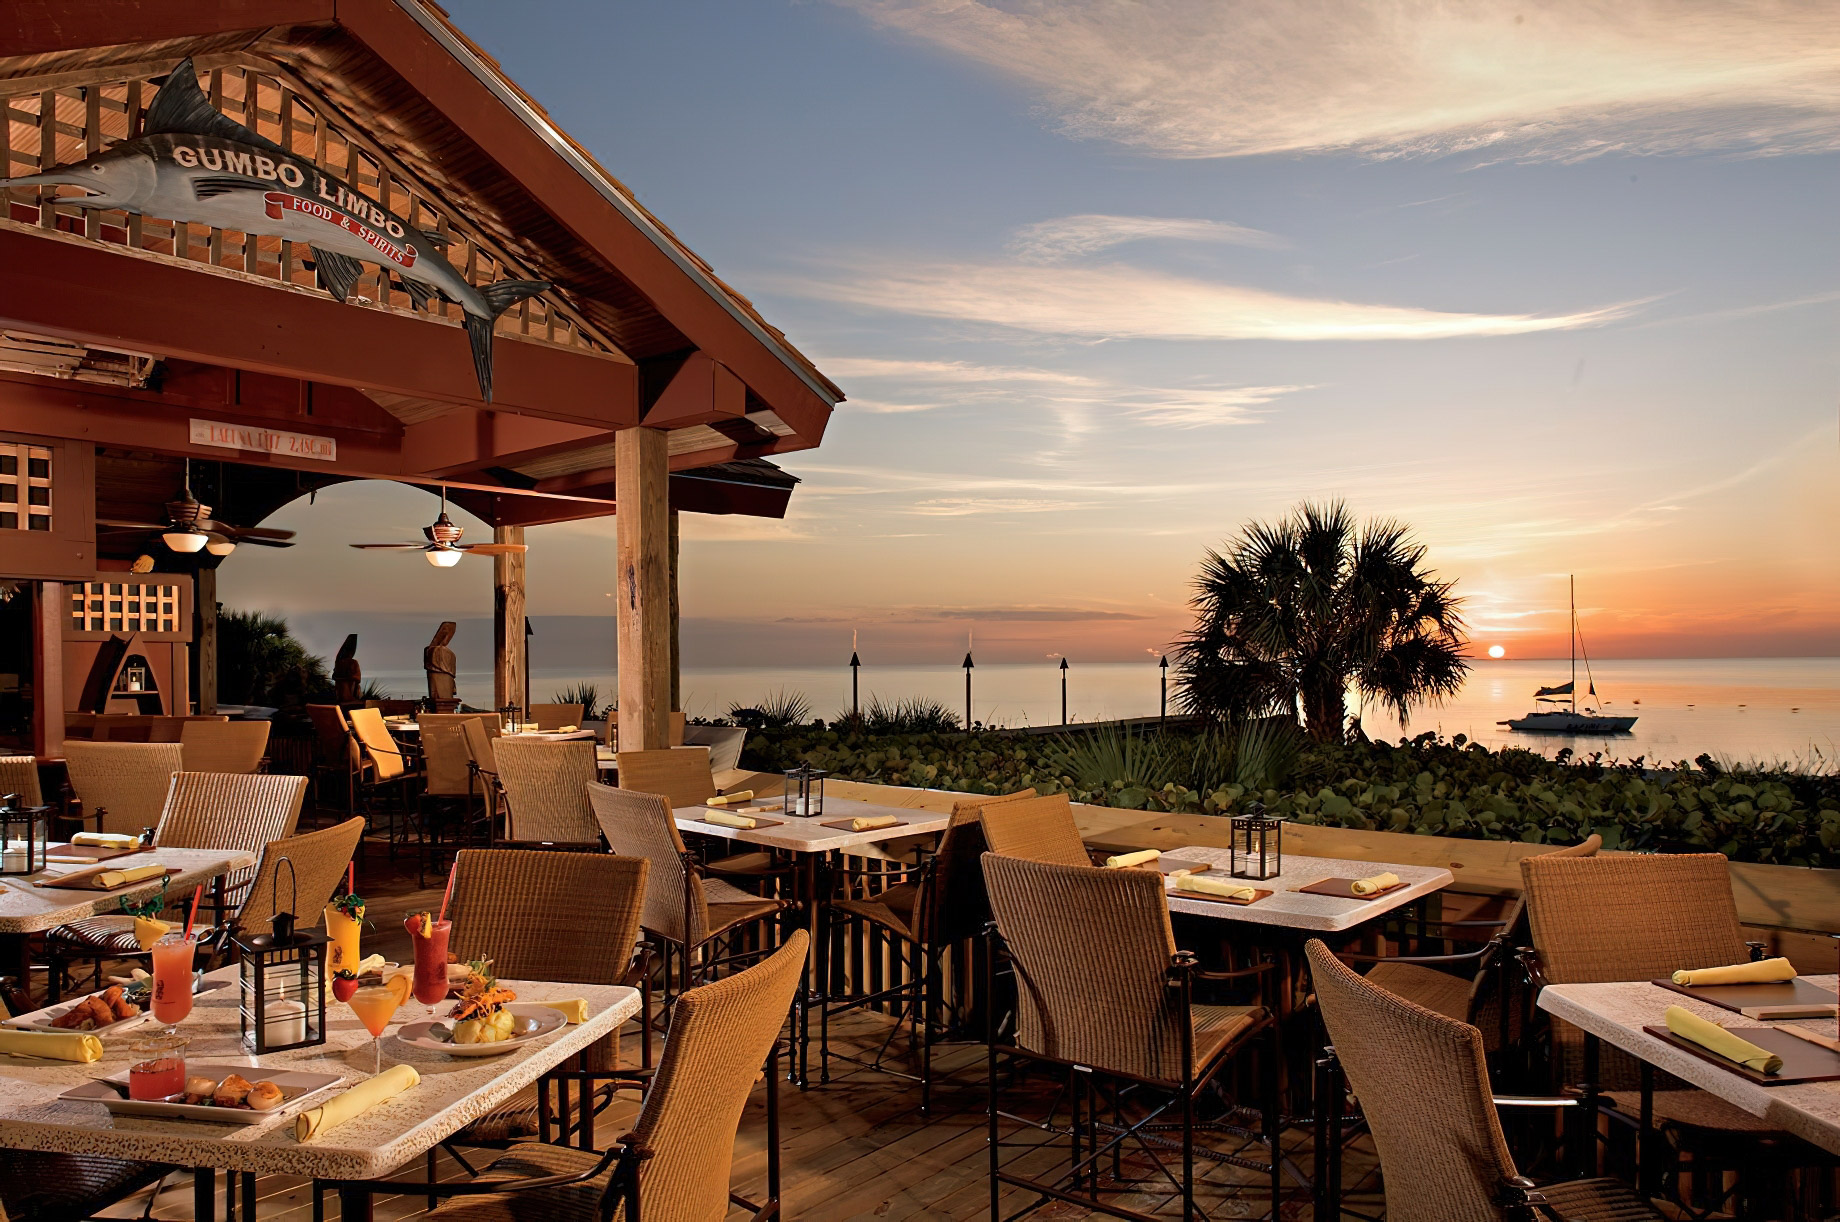 The Ritz-Carlton, Naples Resort - Naples, FL, USA - Gumbo Limbo Restaurant Terrace Sunset